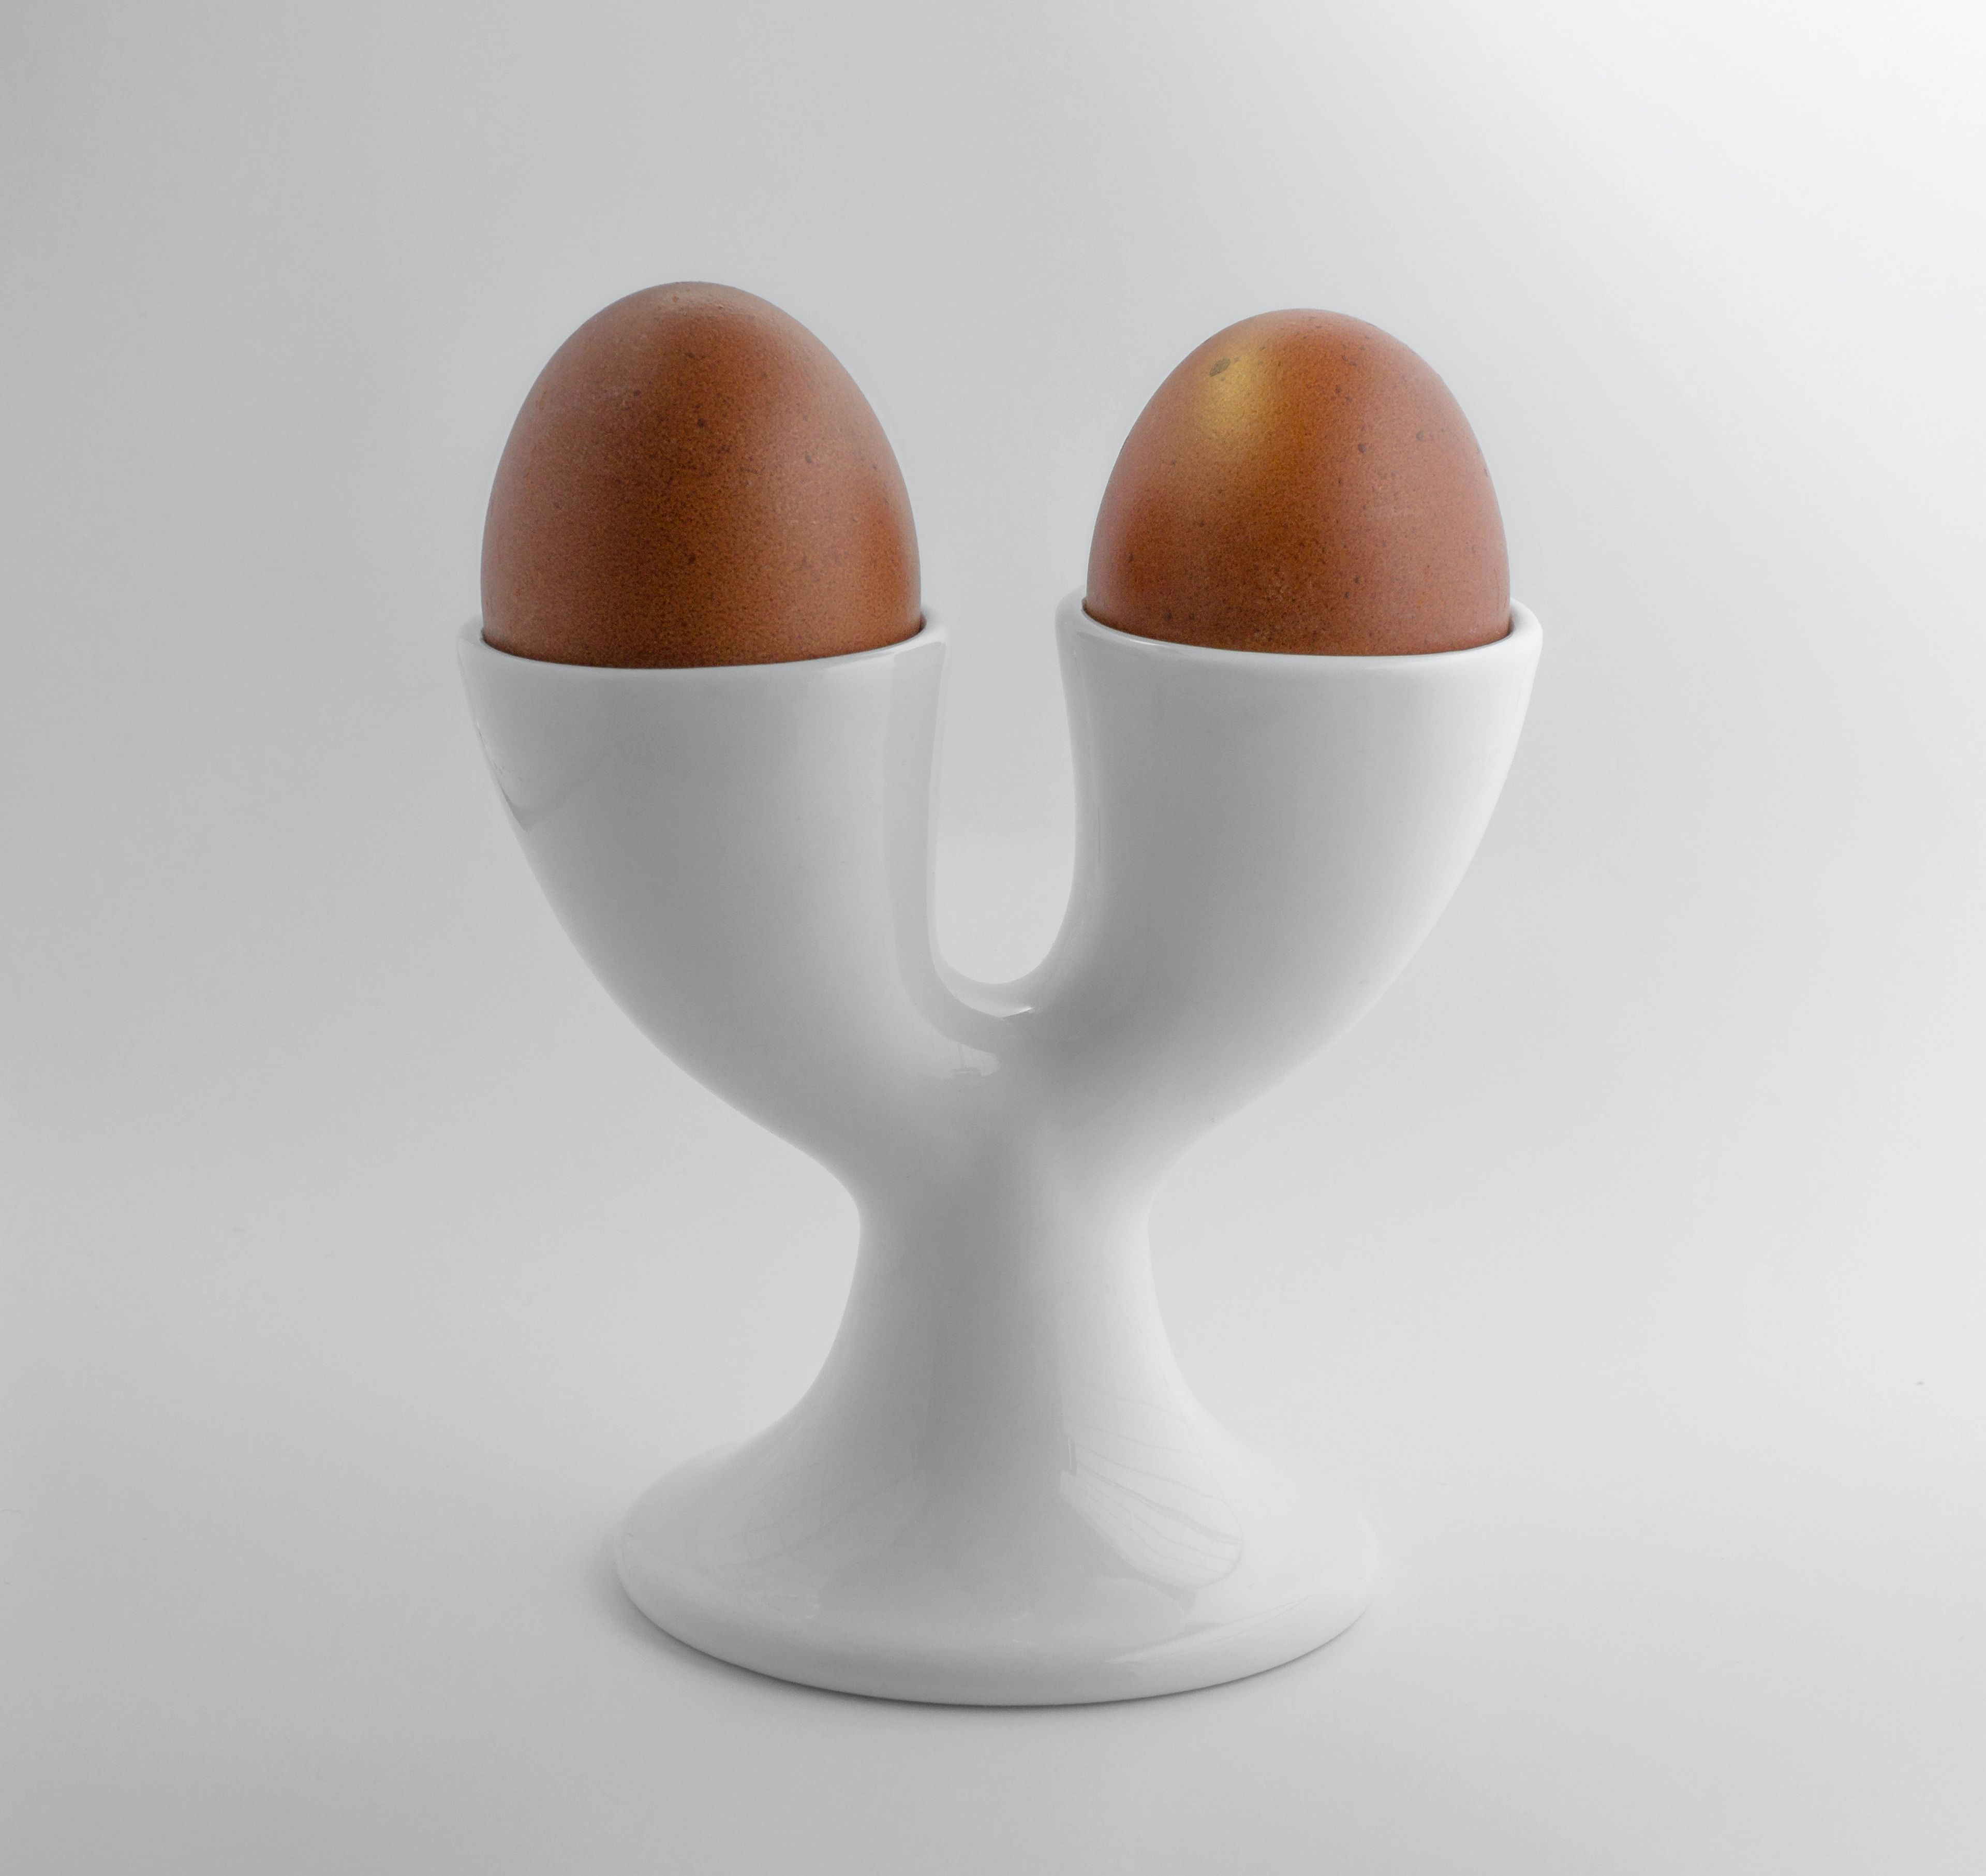 Як правильно варити яйця: поради